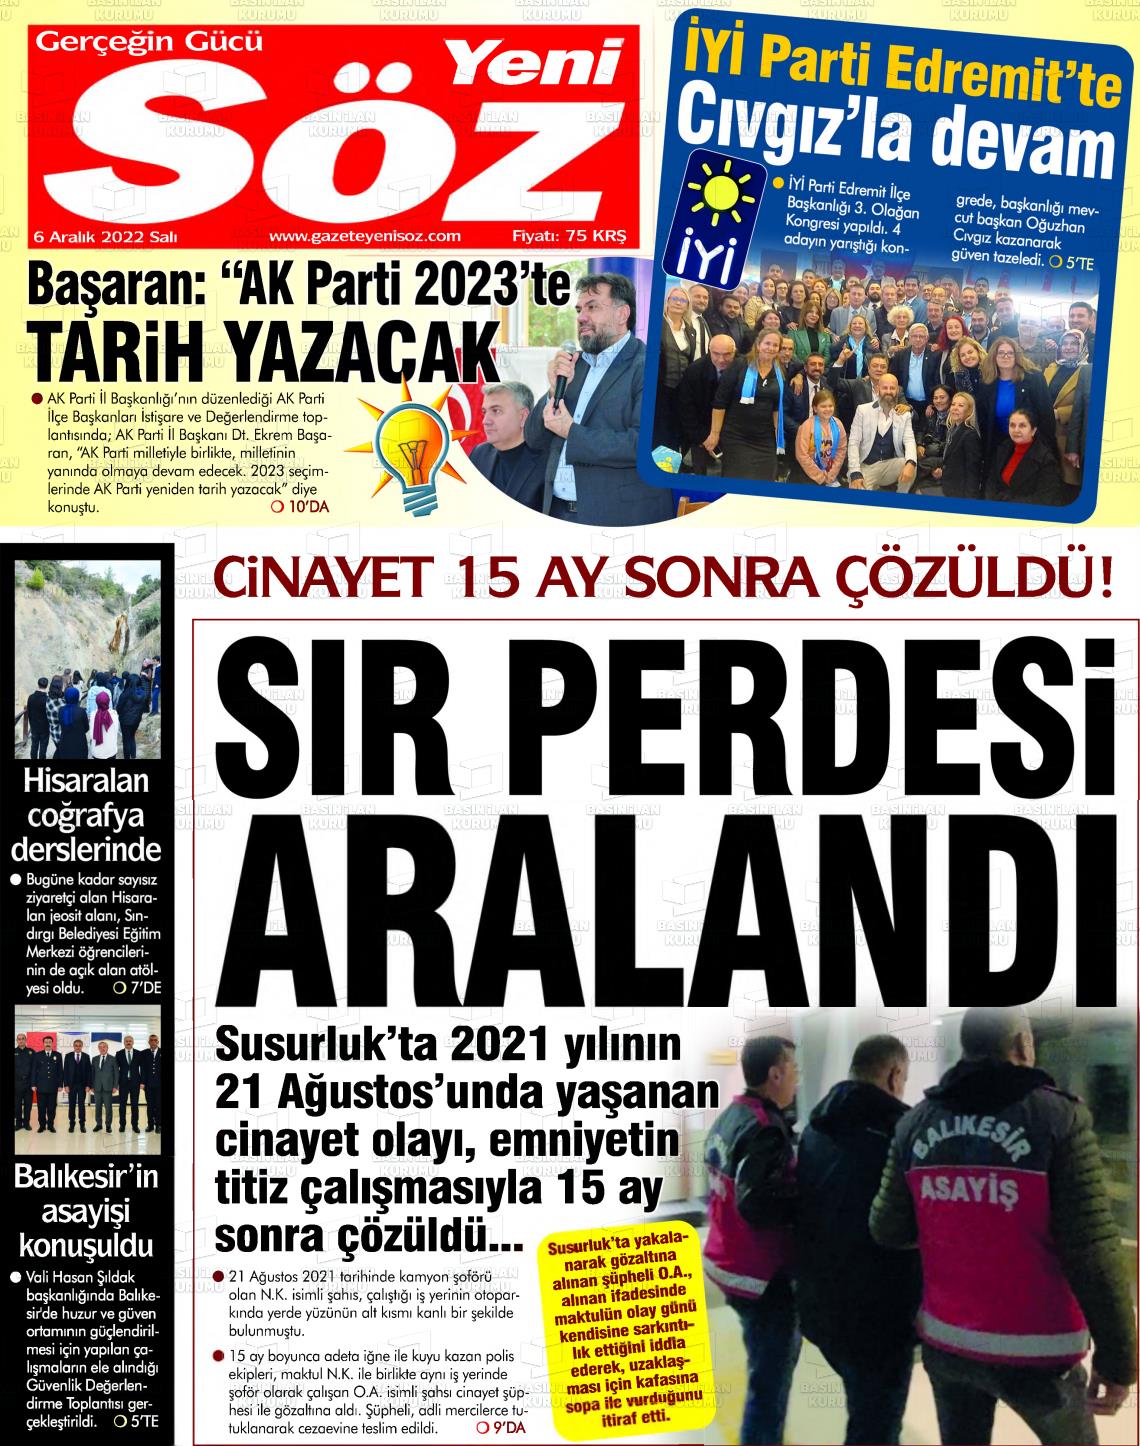 06 Aralık 2022 Yeni Söz Gazete Manşeti